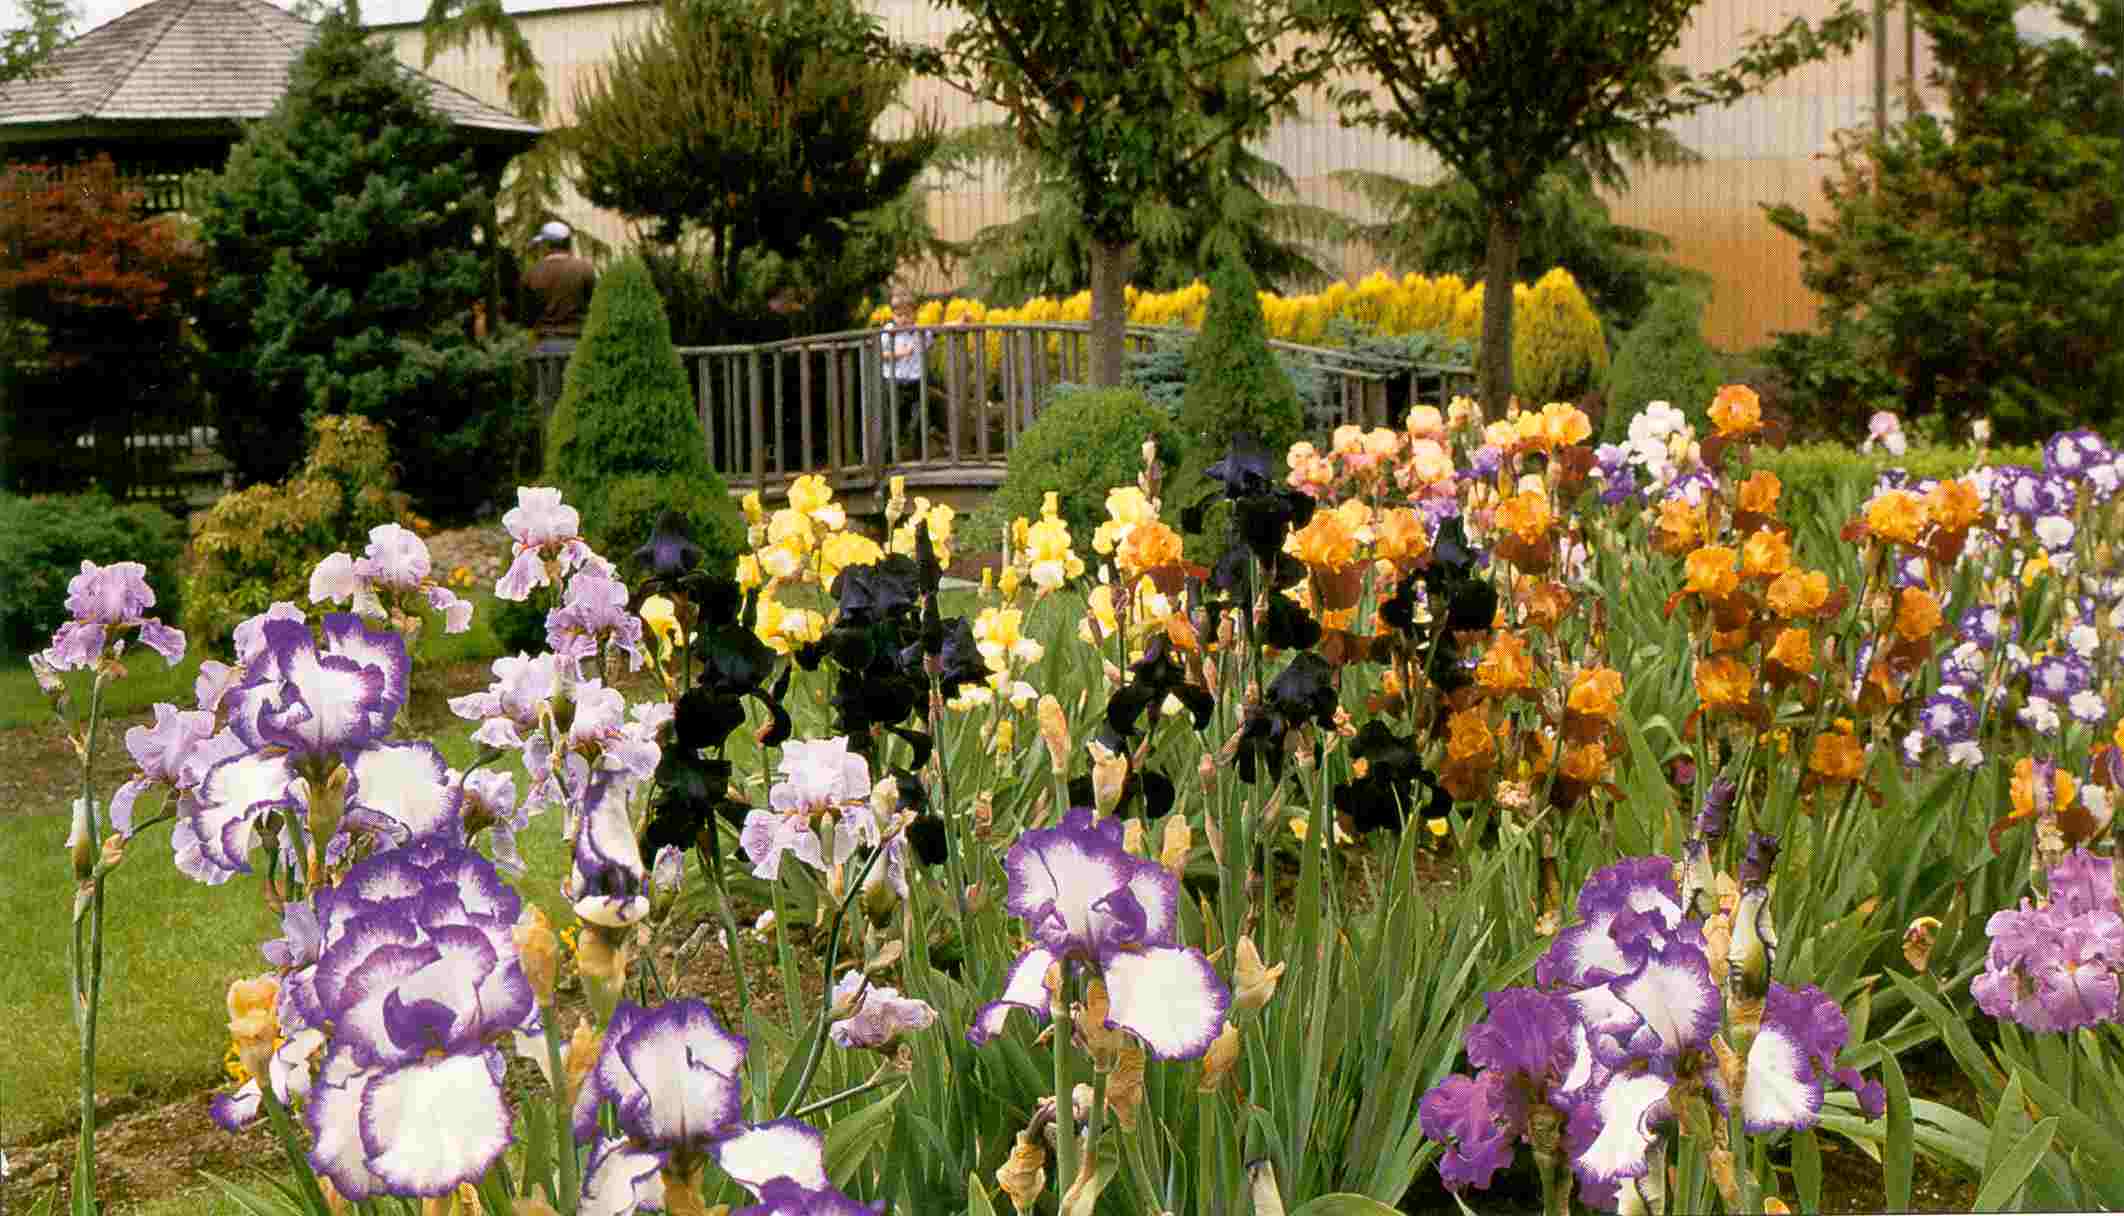 Астильба в ландшафтном дизайне: фото, сочетания с хостой, лилейниками, гейхерой, туей, с чем посадить рядом в миксбордере на даче, в саду